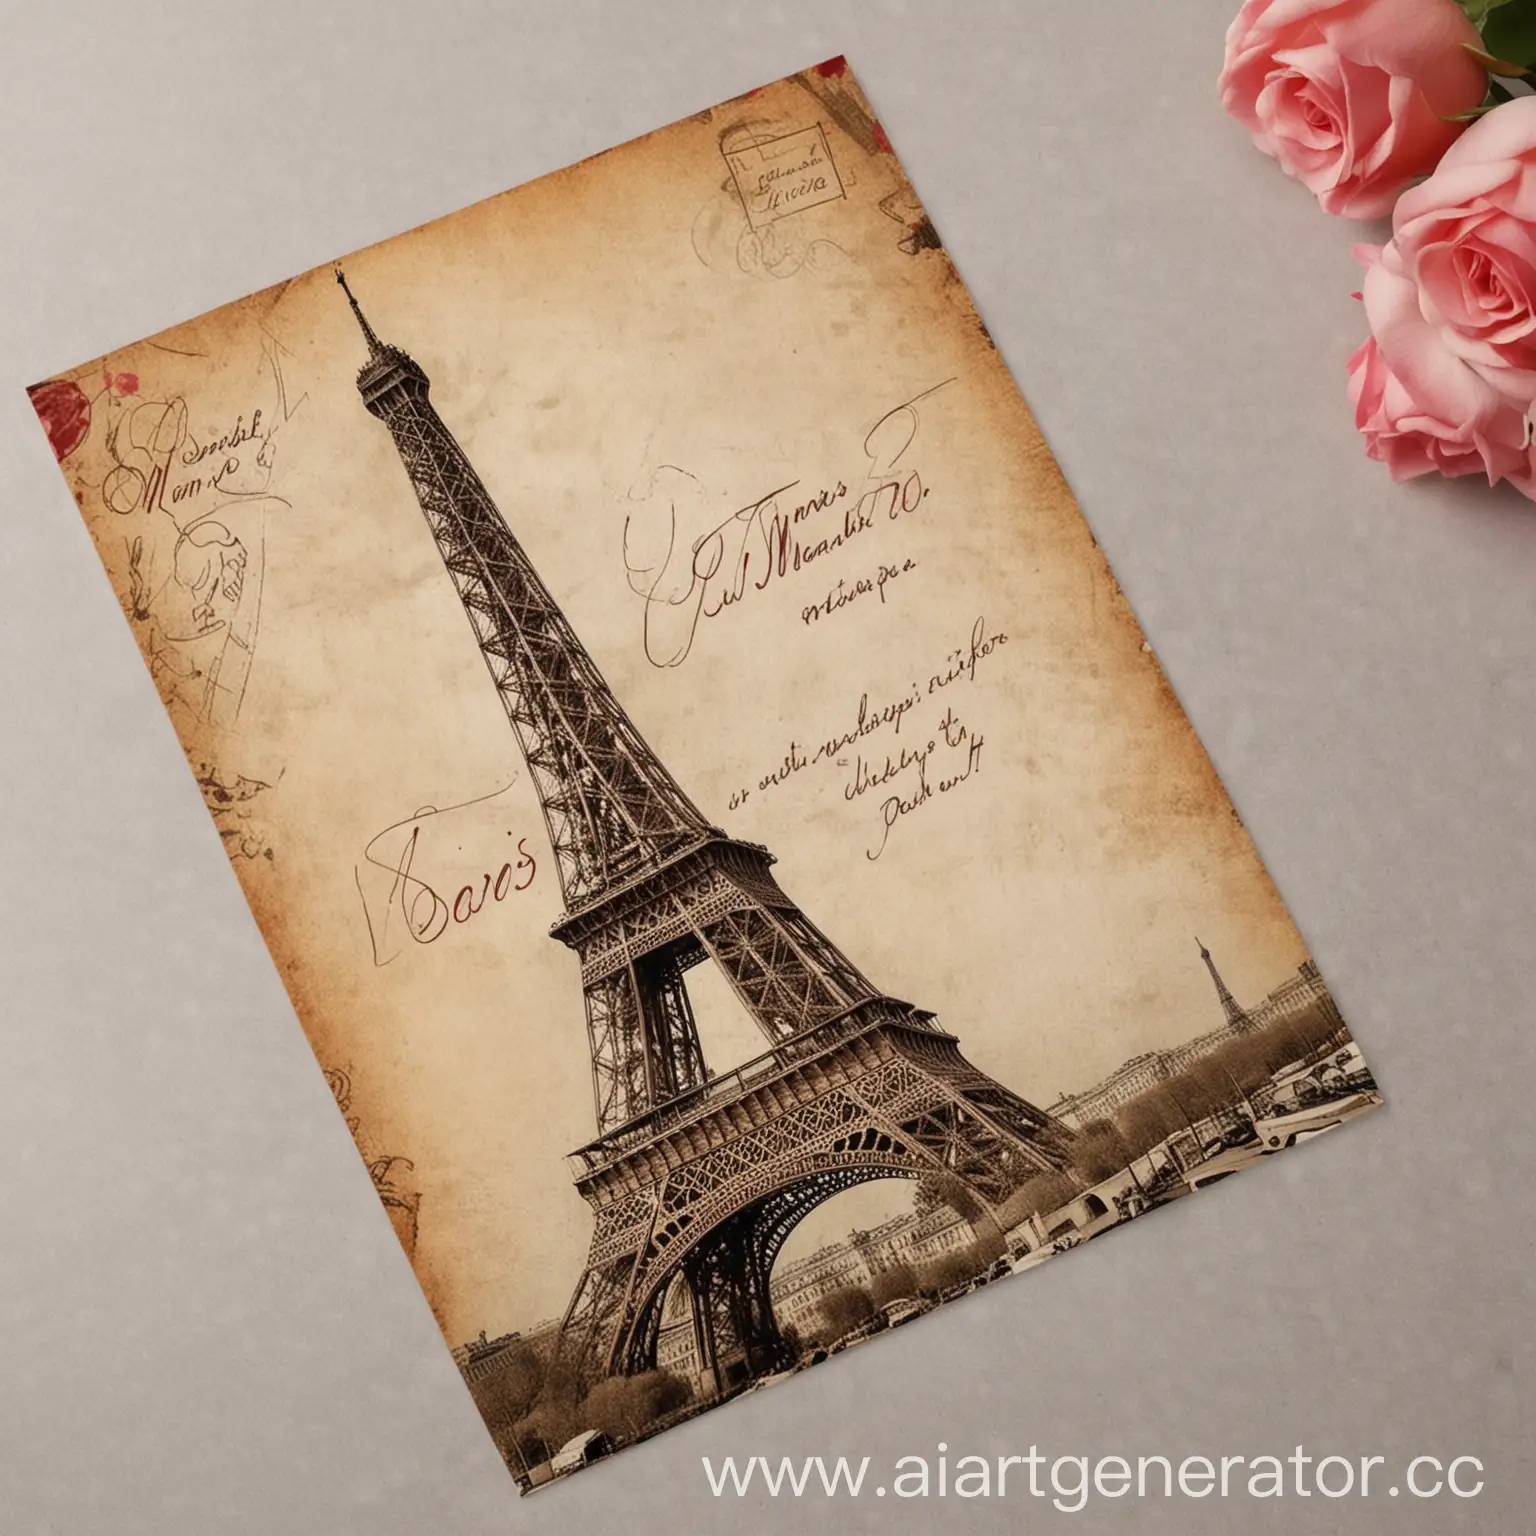 создай, пожалуйста, открытку в реалистичном стиле на который будет написано от руки  на русском языке  большим шрифтом "из Парижа с любовью" и фотография Эйфелевой башни